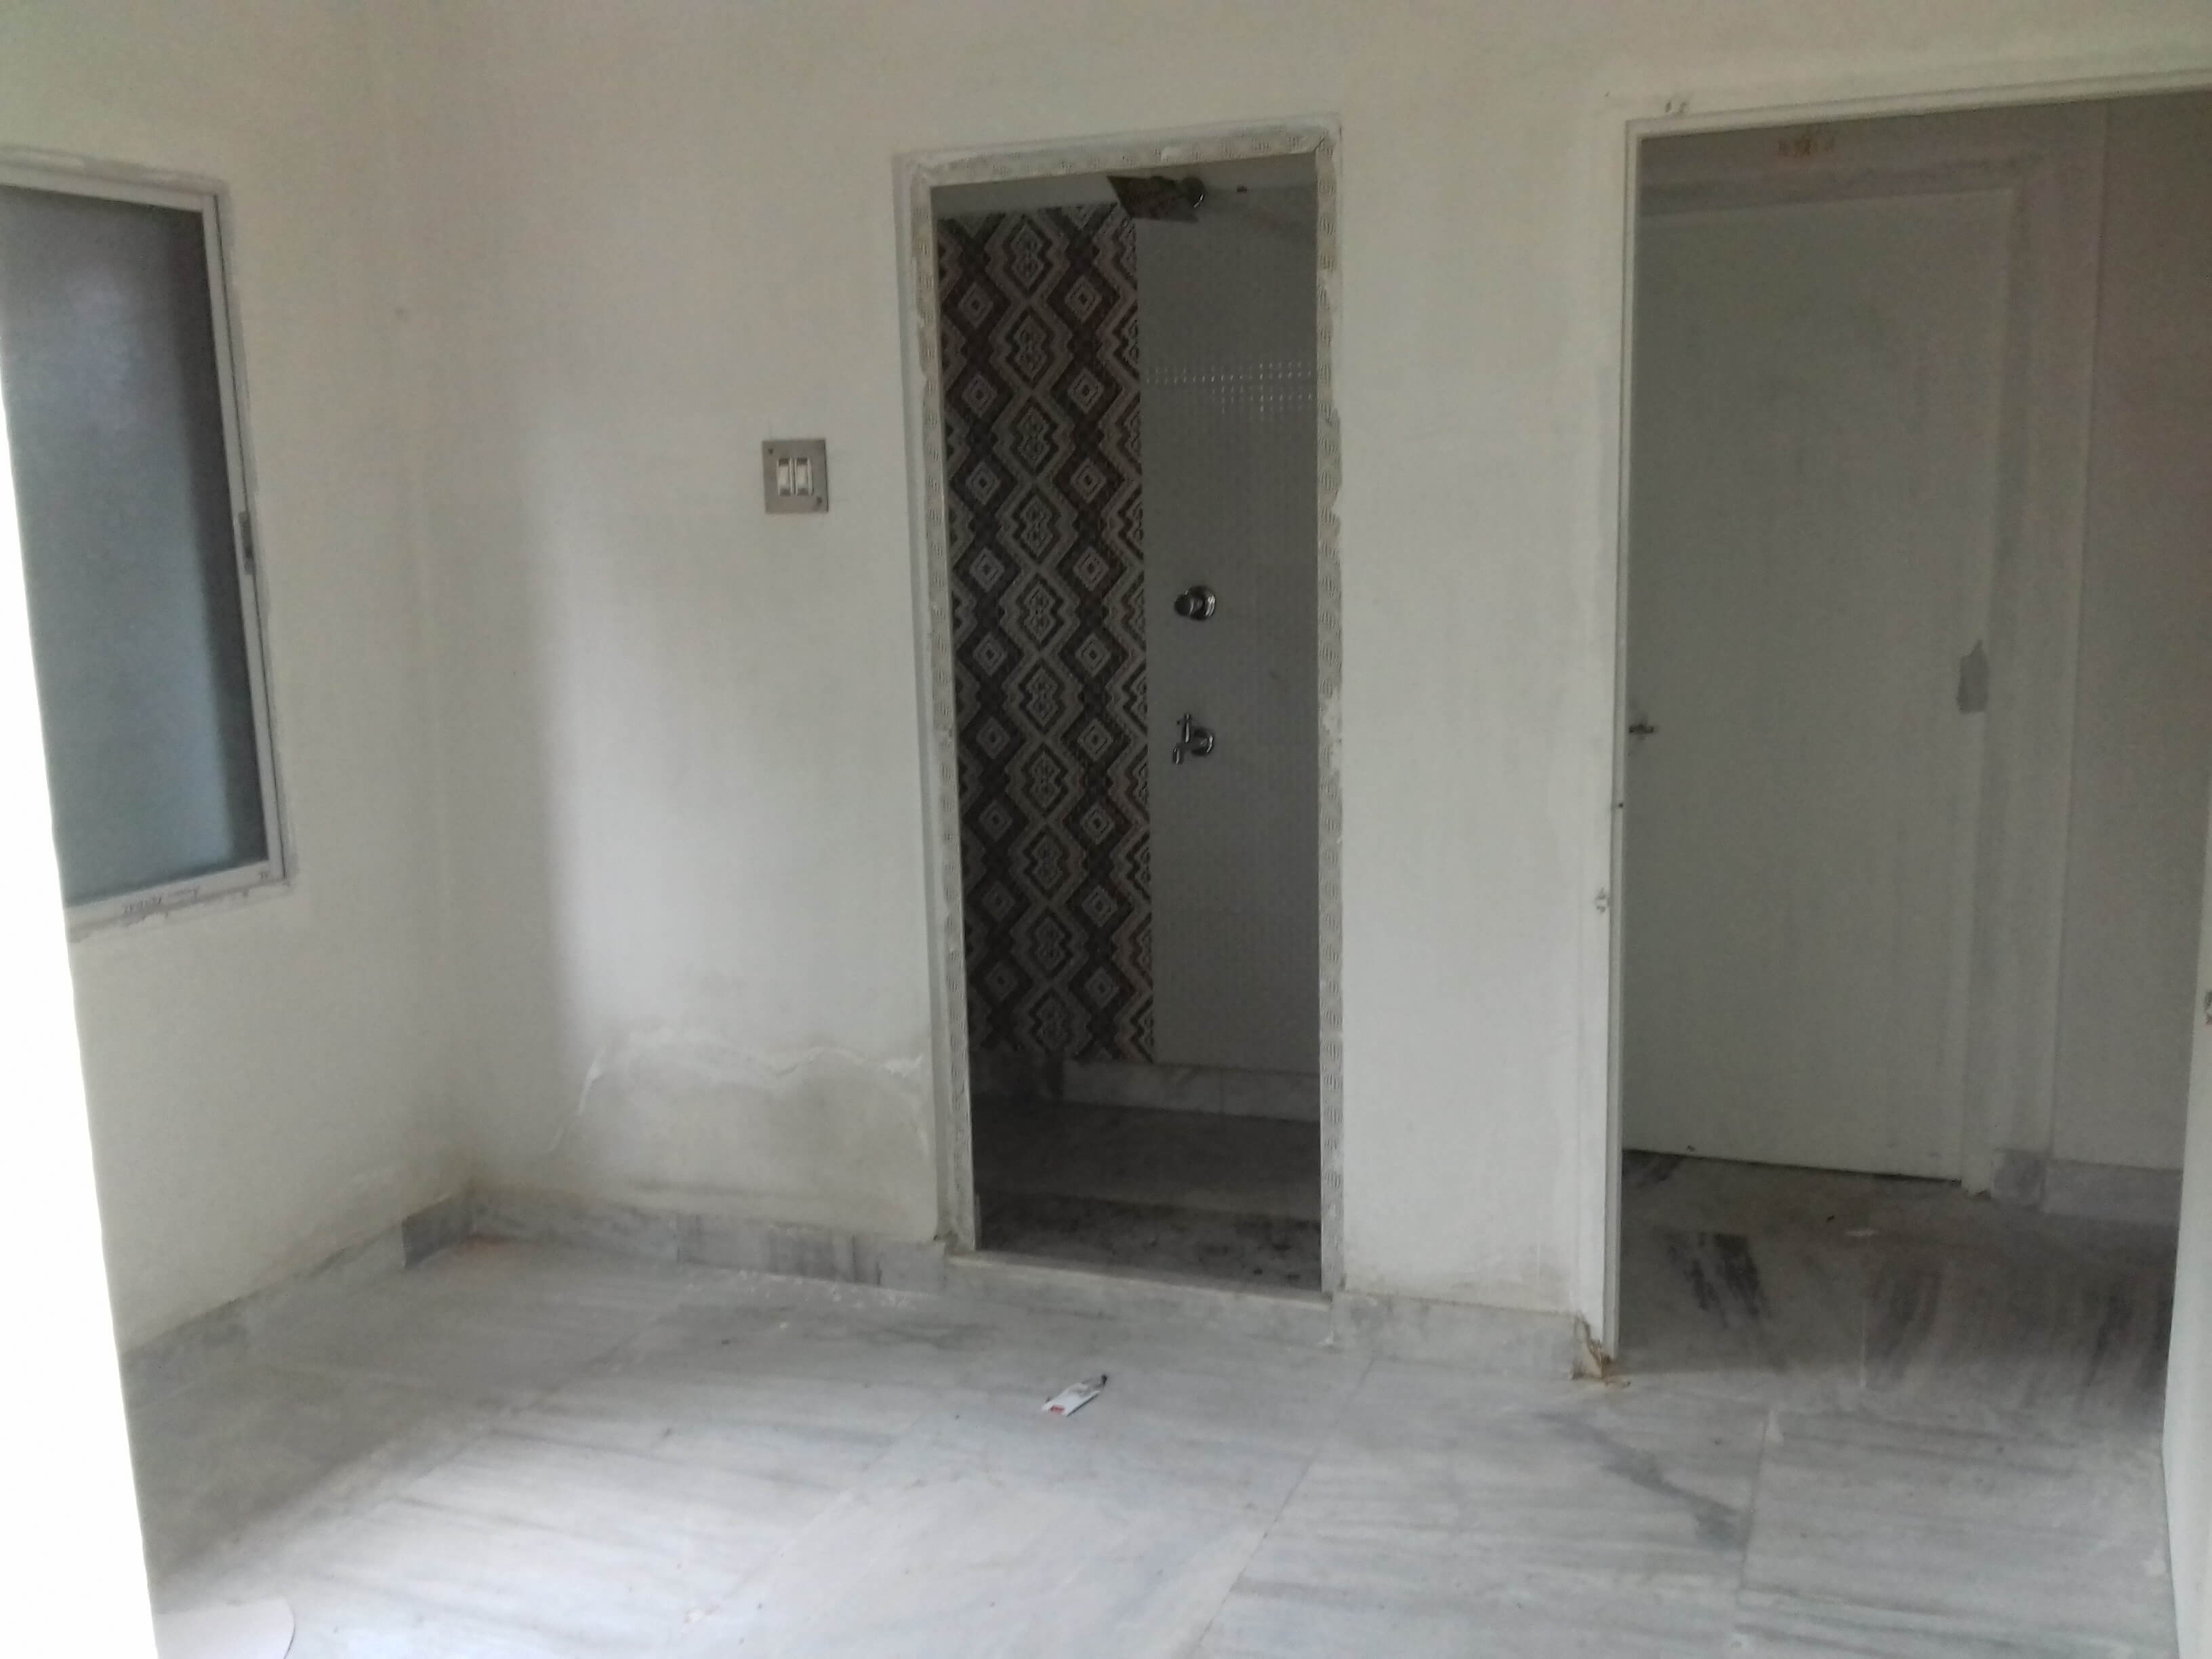 Flat For Rent In Behala Chowrasta Kolkata (Id: 9059)